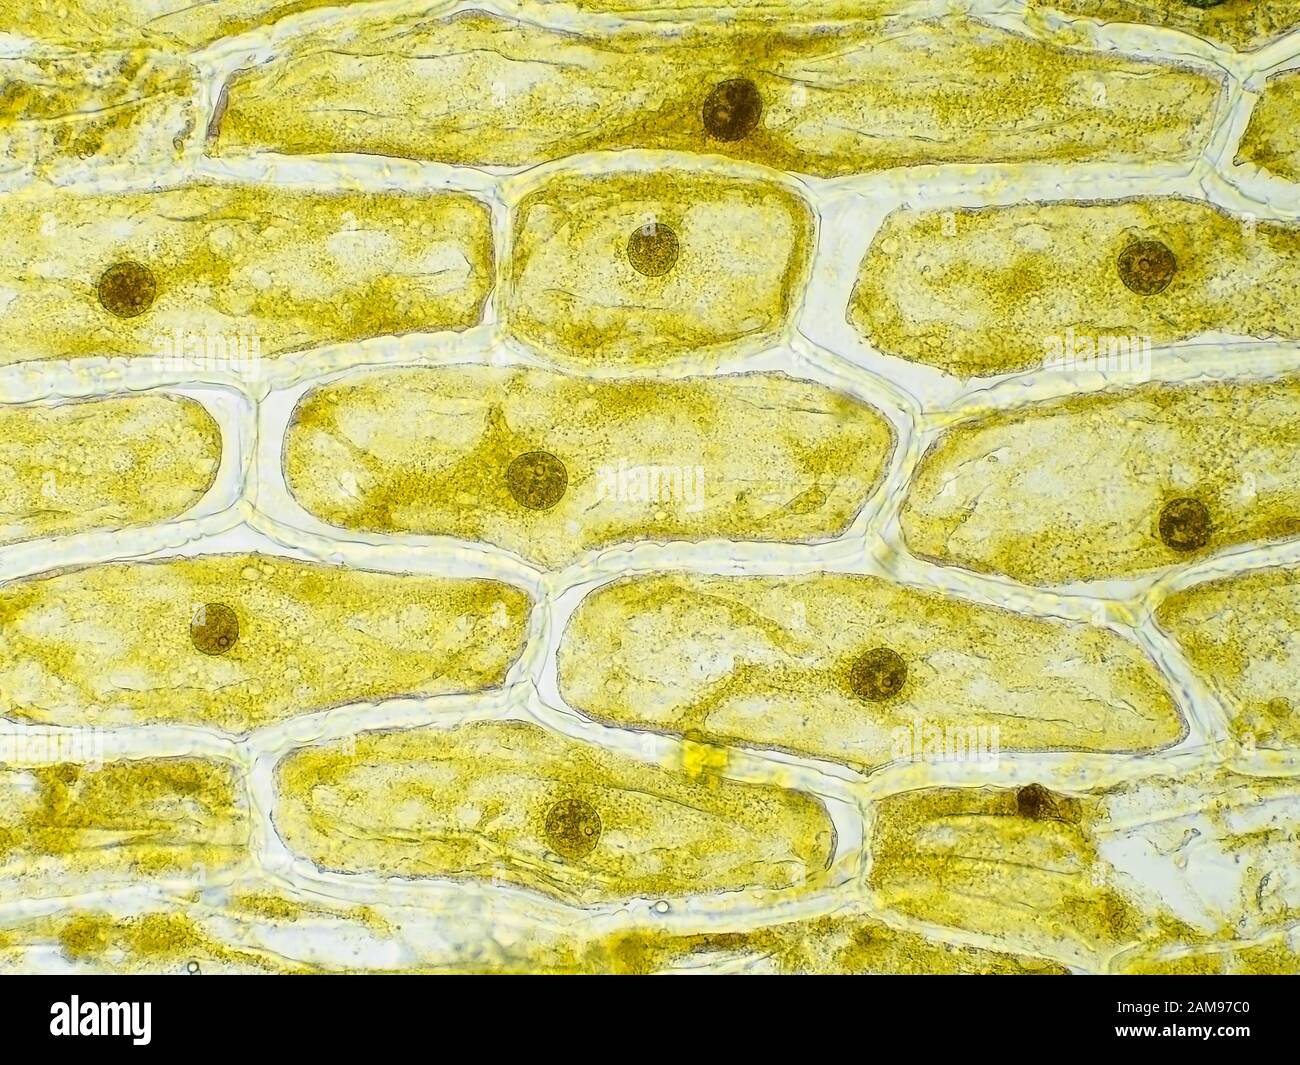 Células de la piel de cebolla bajo el microscopio, el campo de visión horizontal es de aproximadamente 0.61 mm Foto de stock